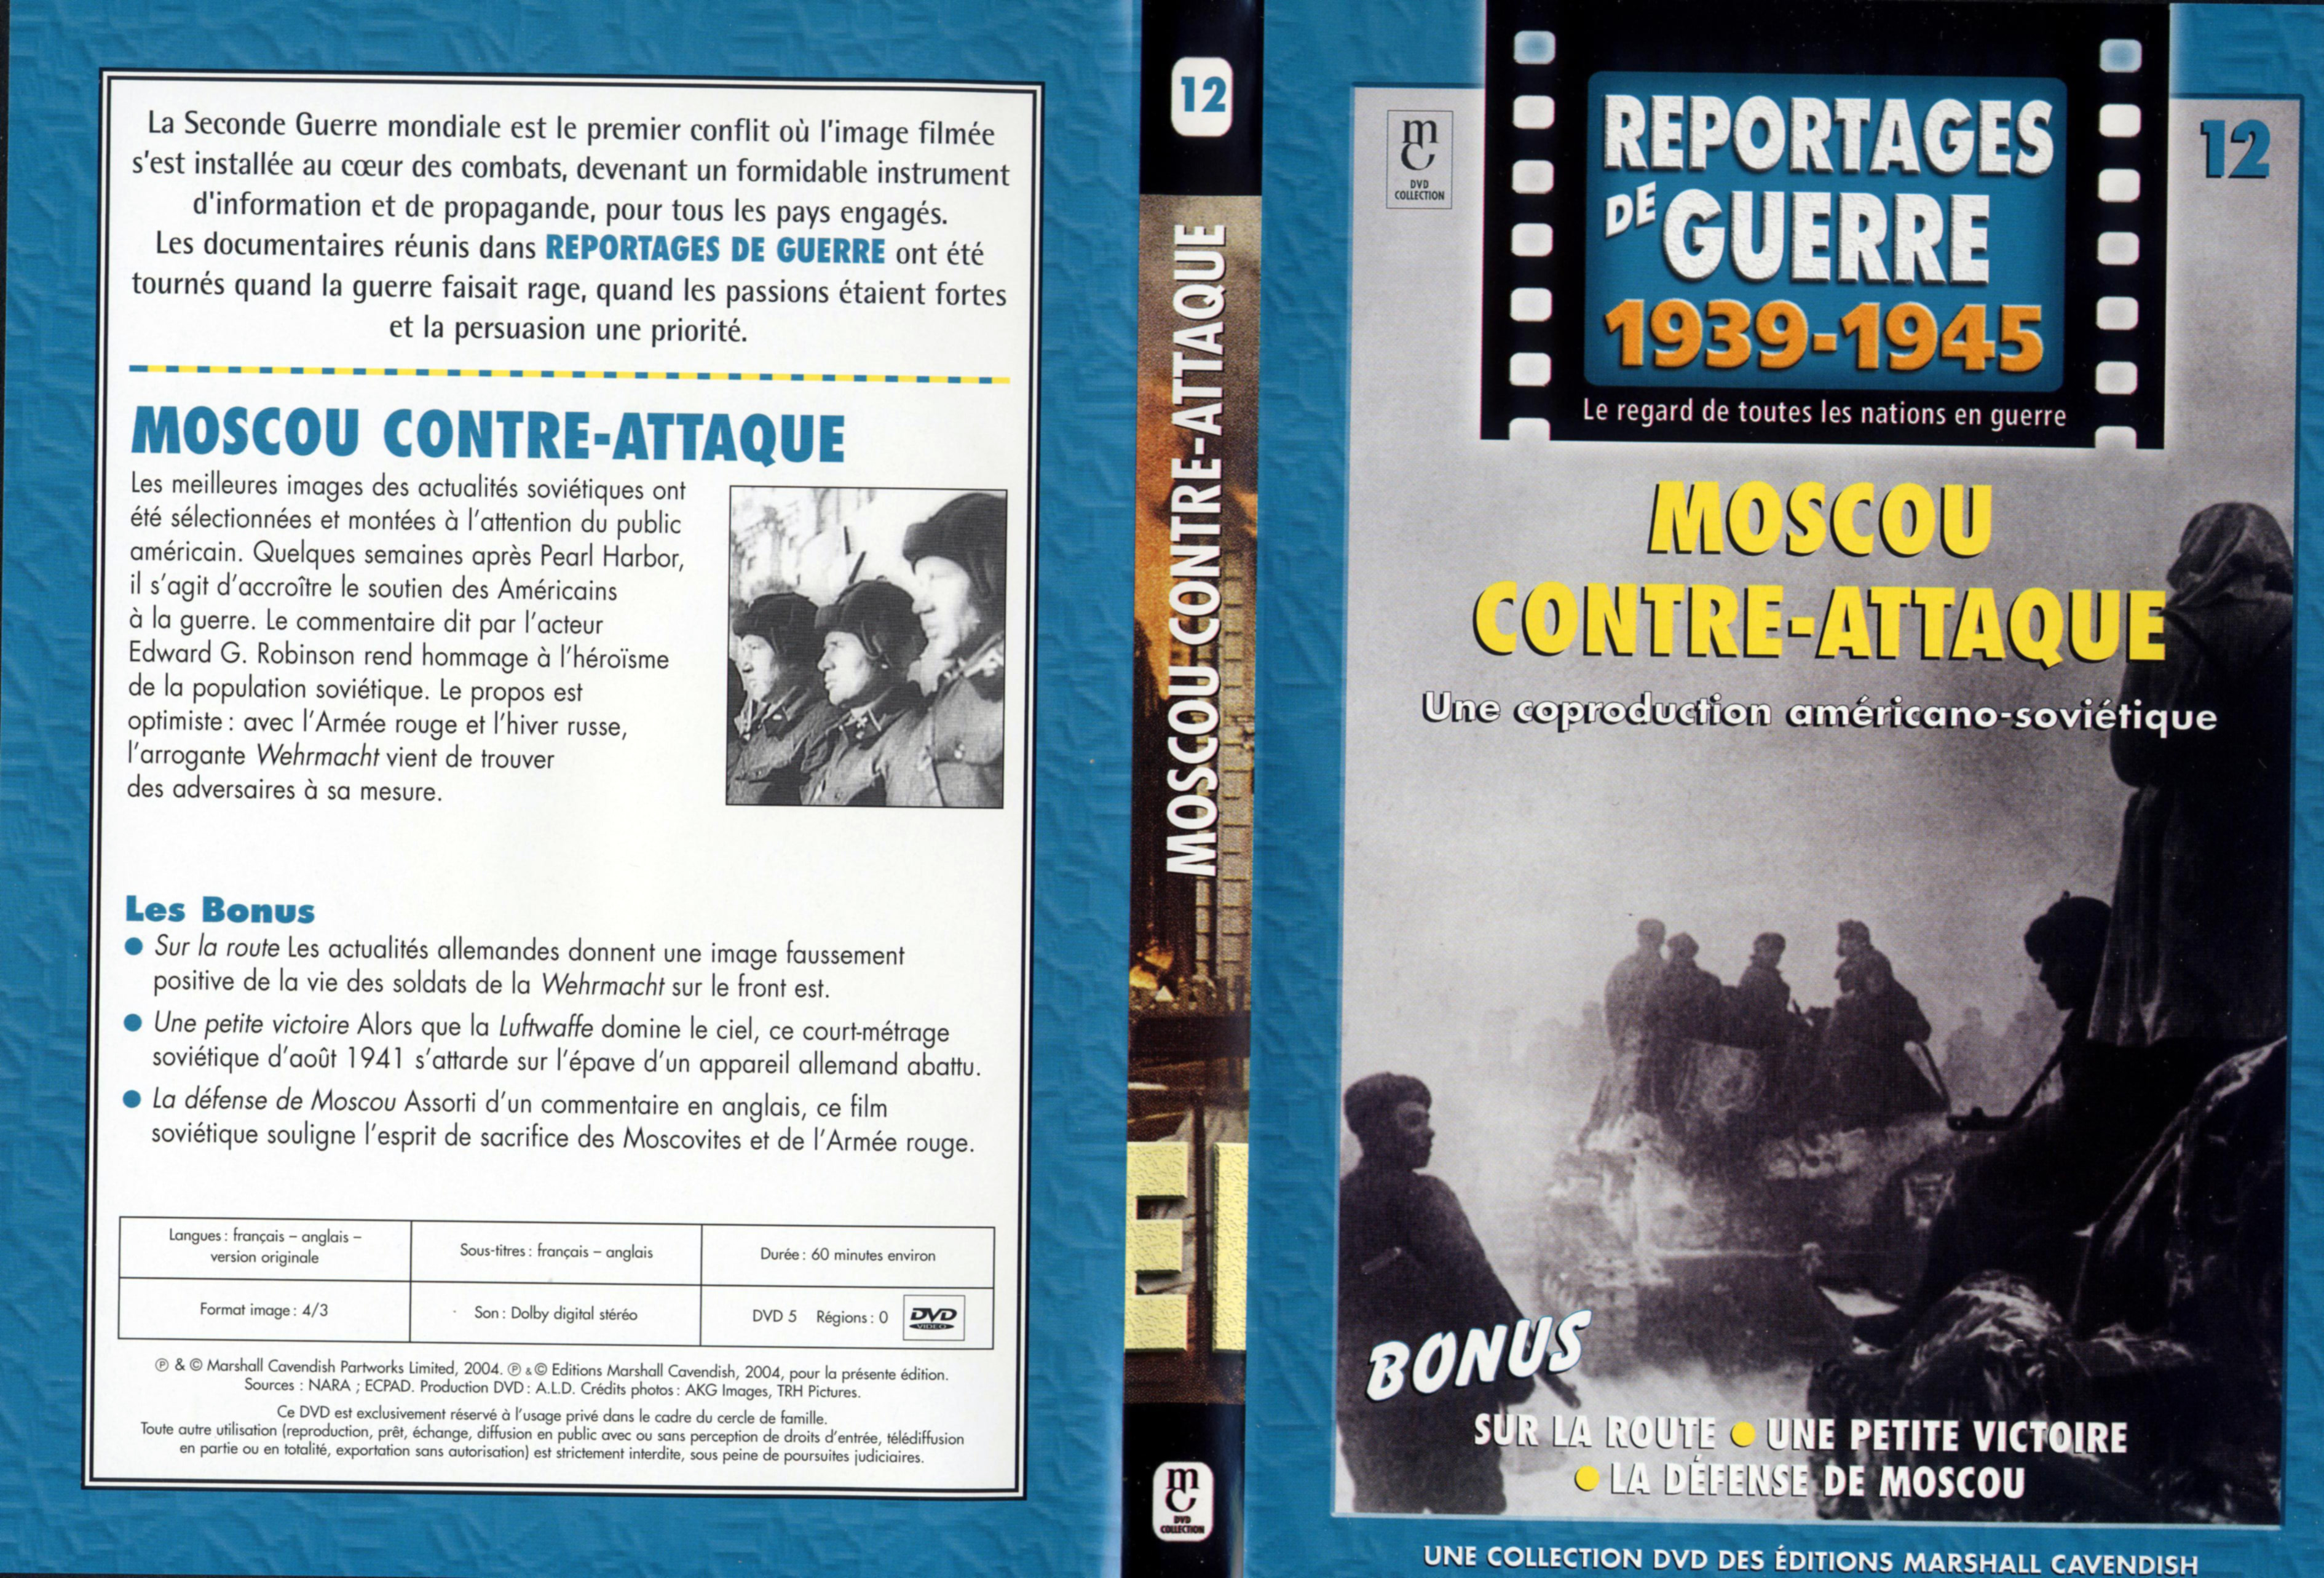 Jaquette DVD Reportages de guerre vol 12